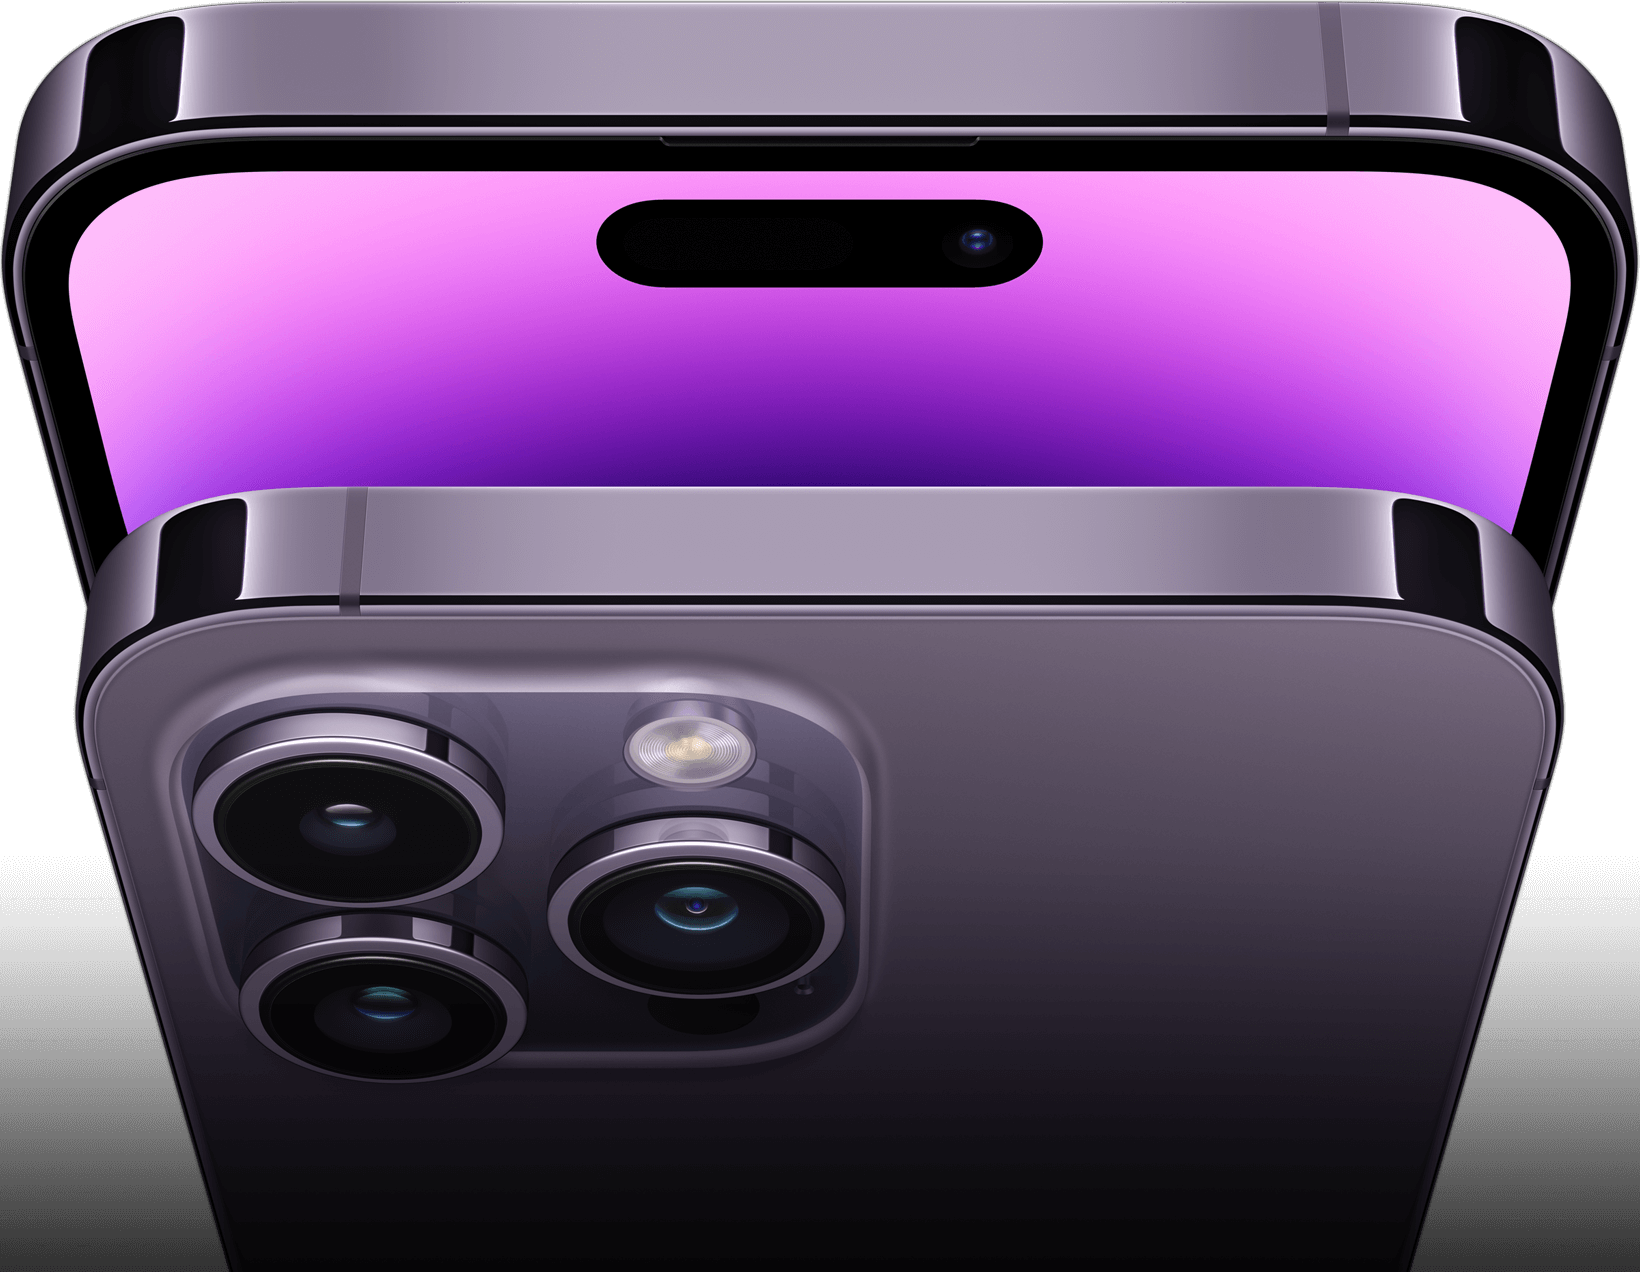 Vista de las partes frontal y trasera del iPhone 14 Pro morado oscuro. La parte trasera muestra los tres lentes del sistema de cámaras Pro. La parte frontal muestra un nuevo fondo de pantalla y la Dynamic Island.